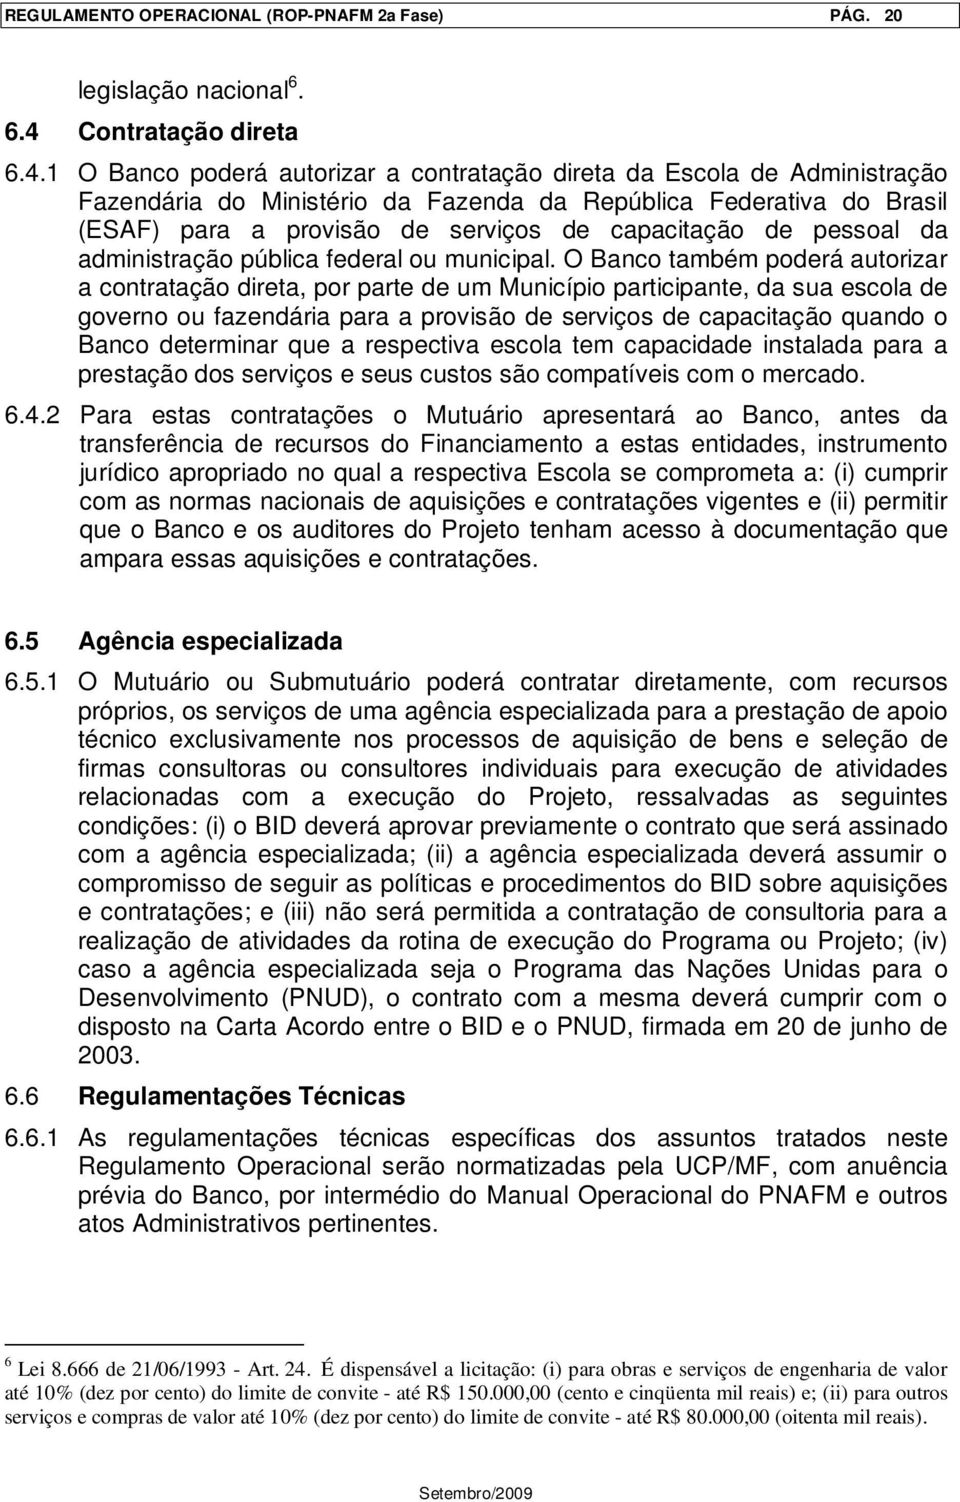 1 O Banco poderá autorizar a contratação direta da Escola de Administração Fazendária do Ministério da Fazenda da República Federativa do Brasil (ESAF) para a provisão de serviços de capacitação de